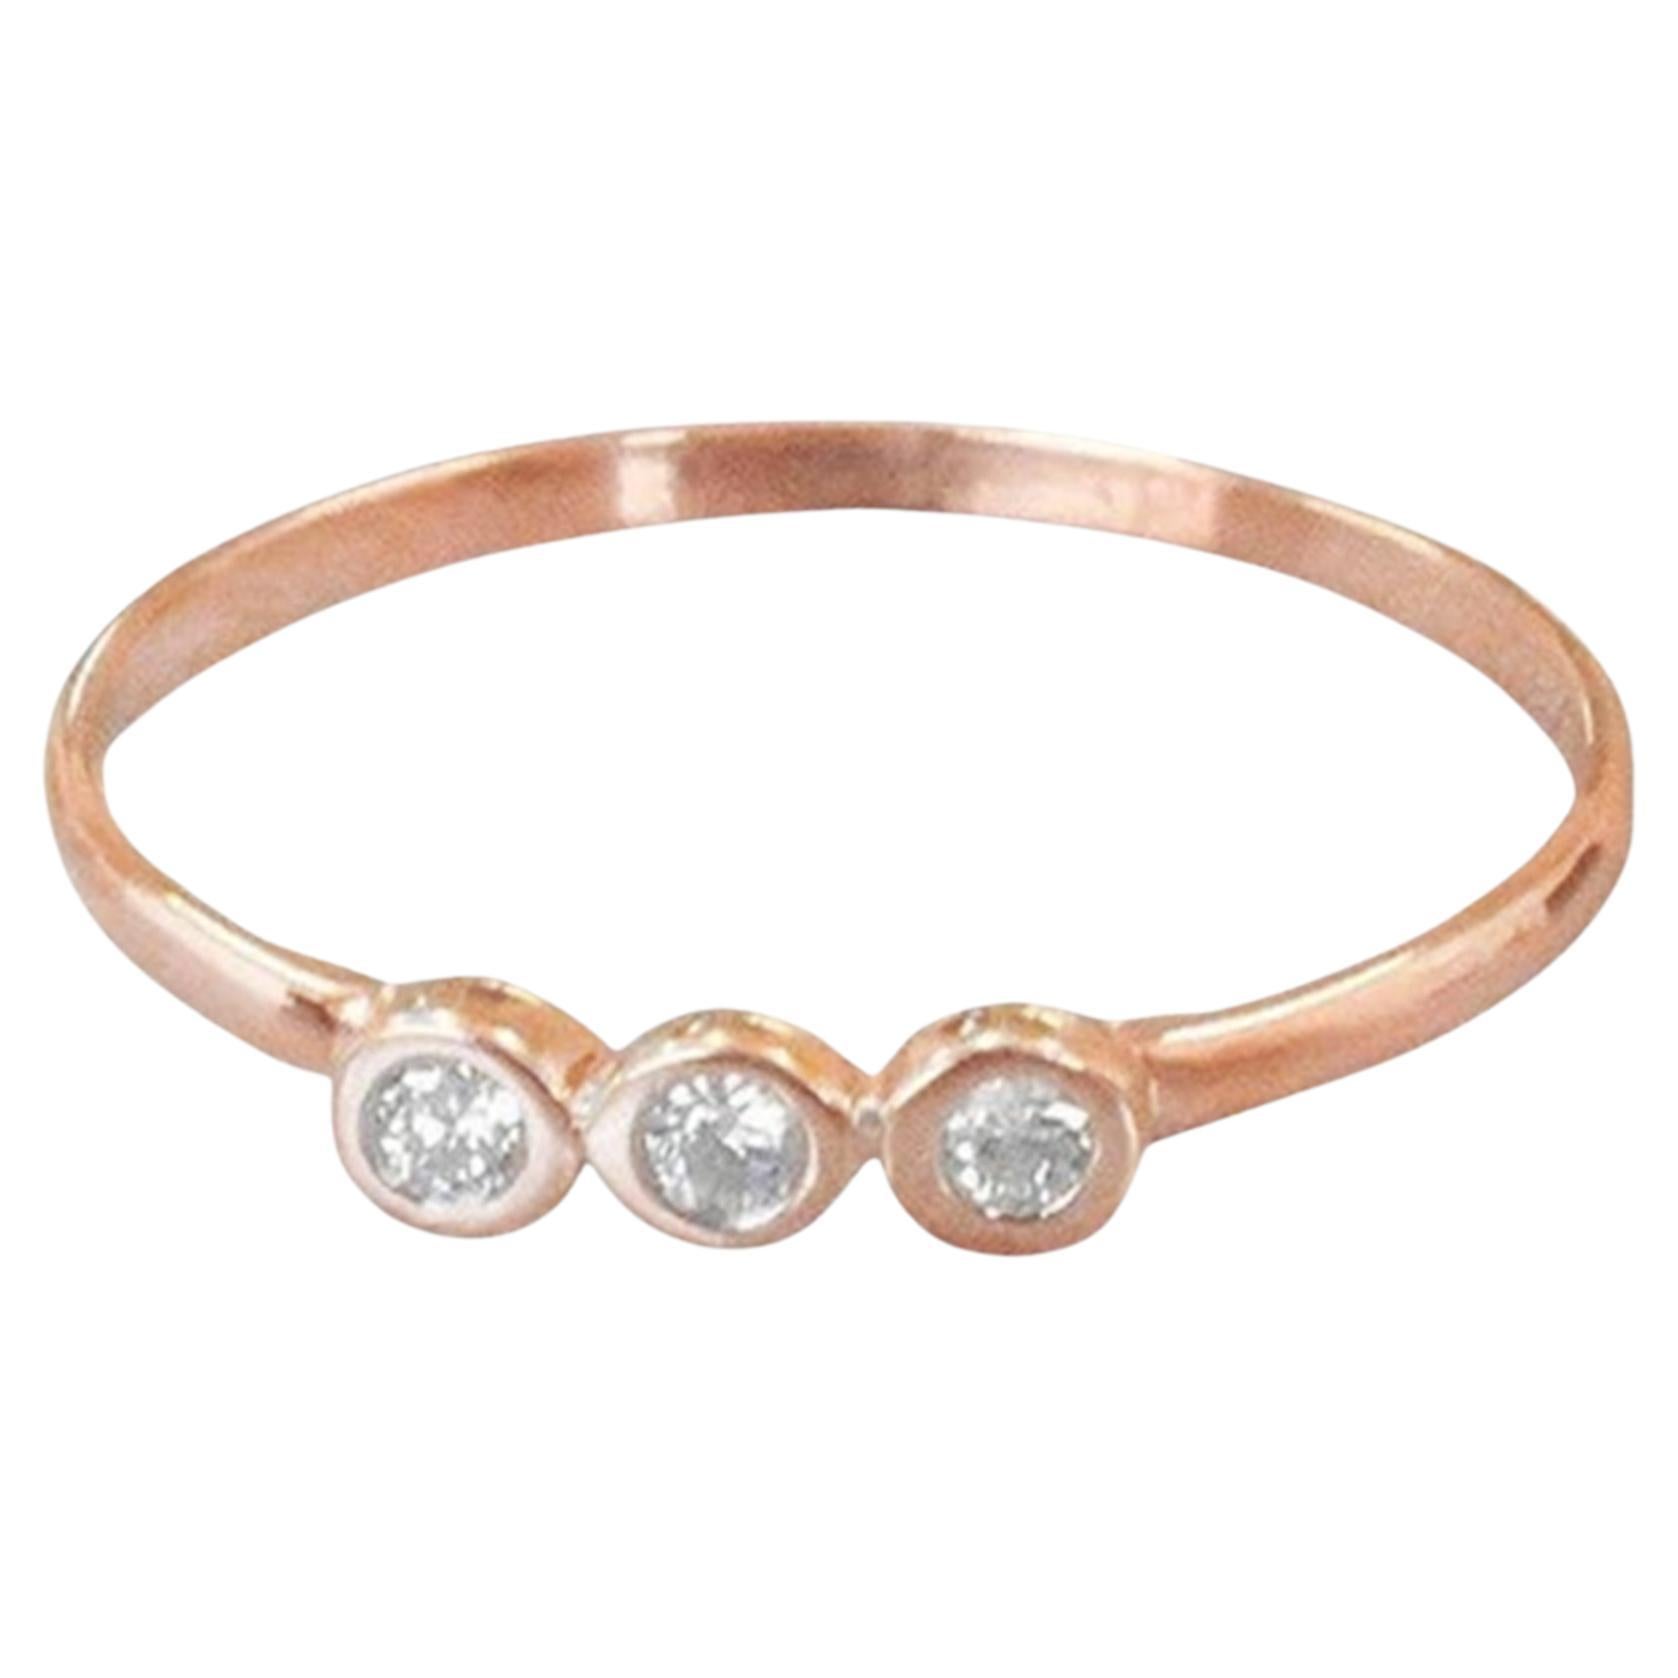 For Sale:  18k Gold Diamond 1.9 mm Ring Bezel Setting Three Diamond Ring Trio Diamond Ring